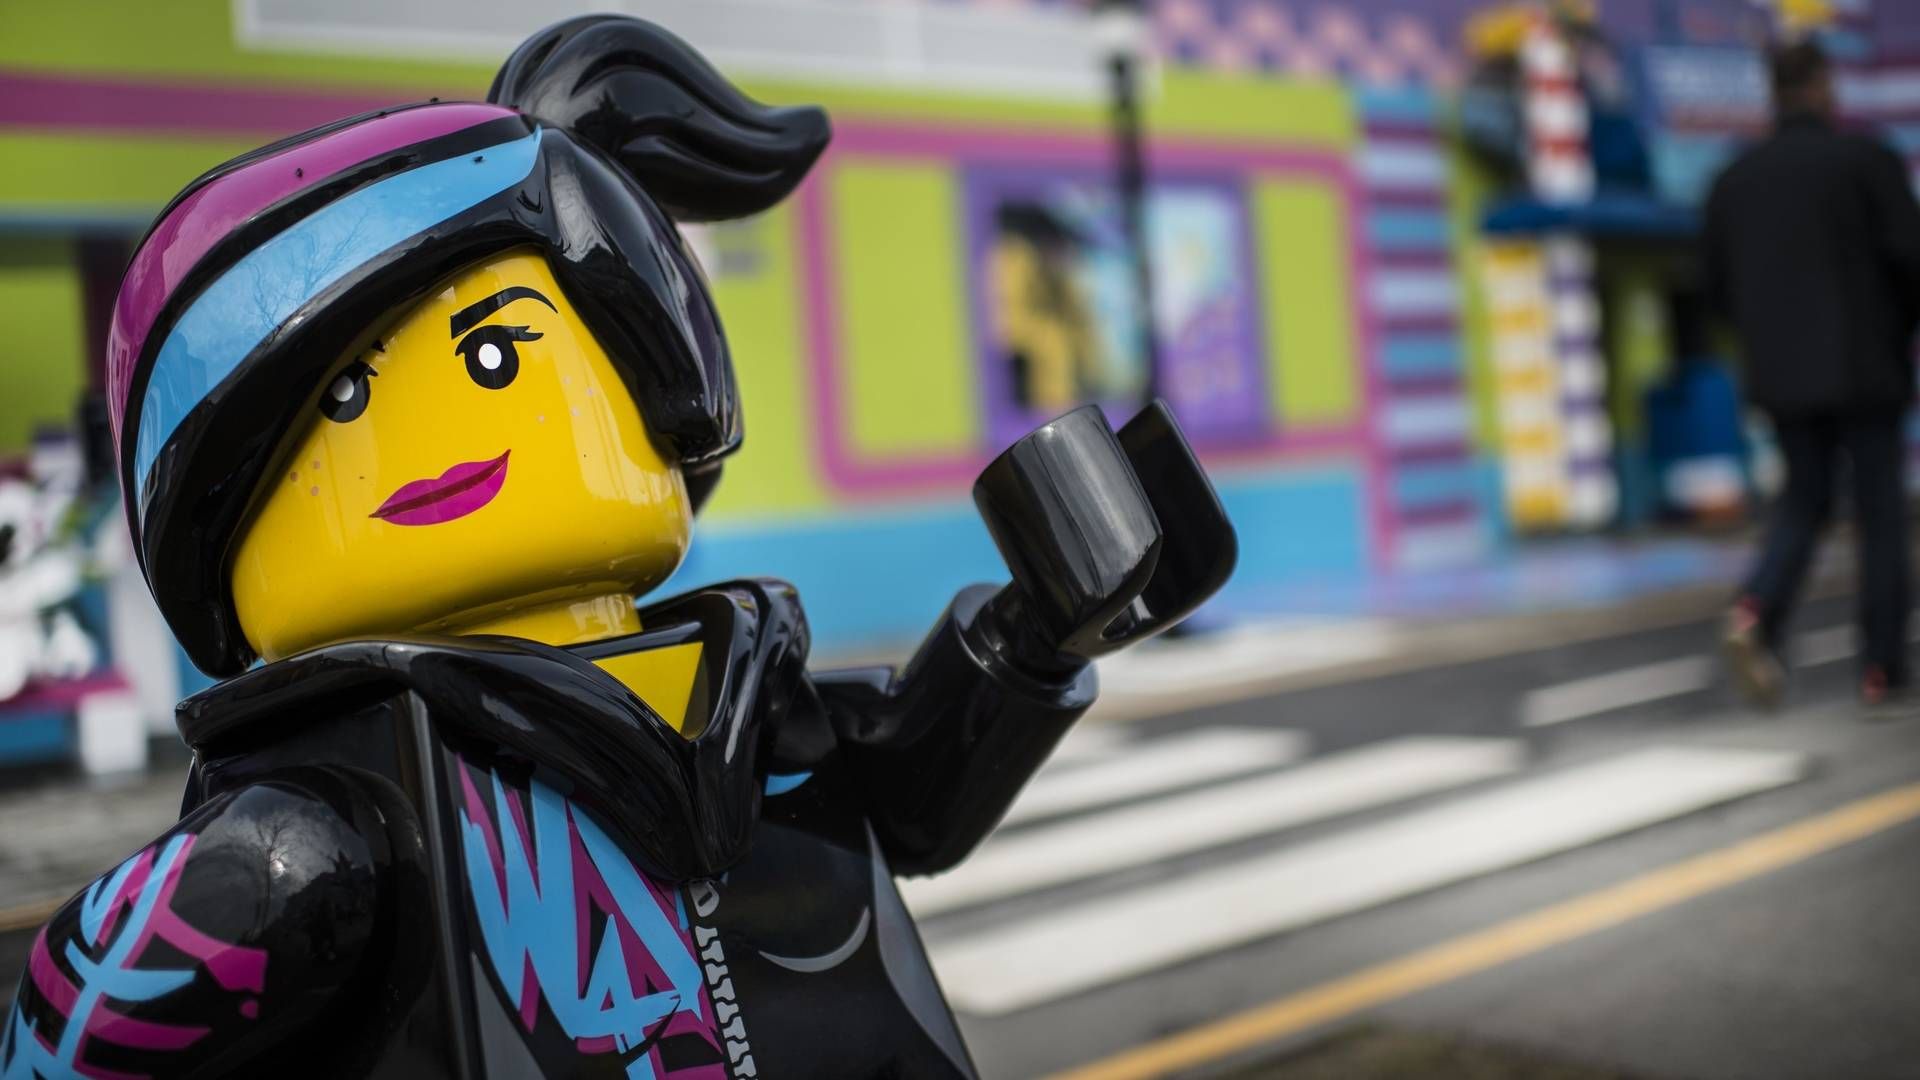 I 2021 åbnede Legoland sit nye område, Lego Movie World, inspireret af den enorme succes, Lego The Movie fik i 2014. Lige nu rider Lego på en bølge af vækst, men kunder og analytikere begynder at mane til forsigtighed. Måske kan Lego tjene for mange penge. | Foto: Tim Kildeborg Jensen